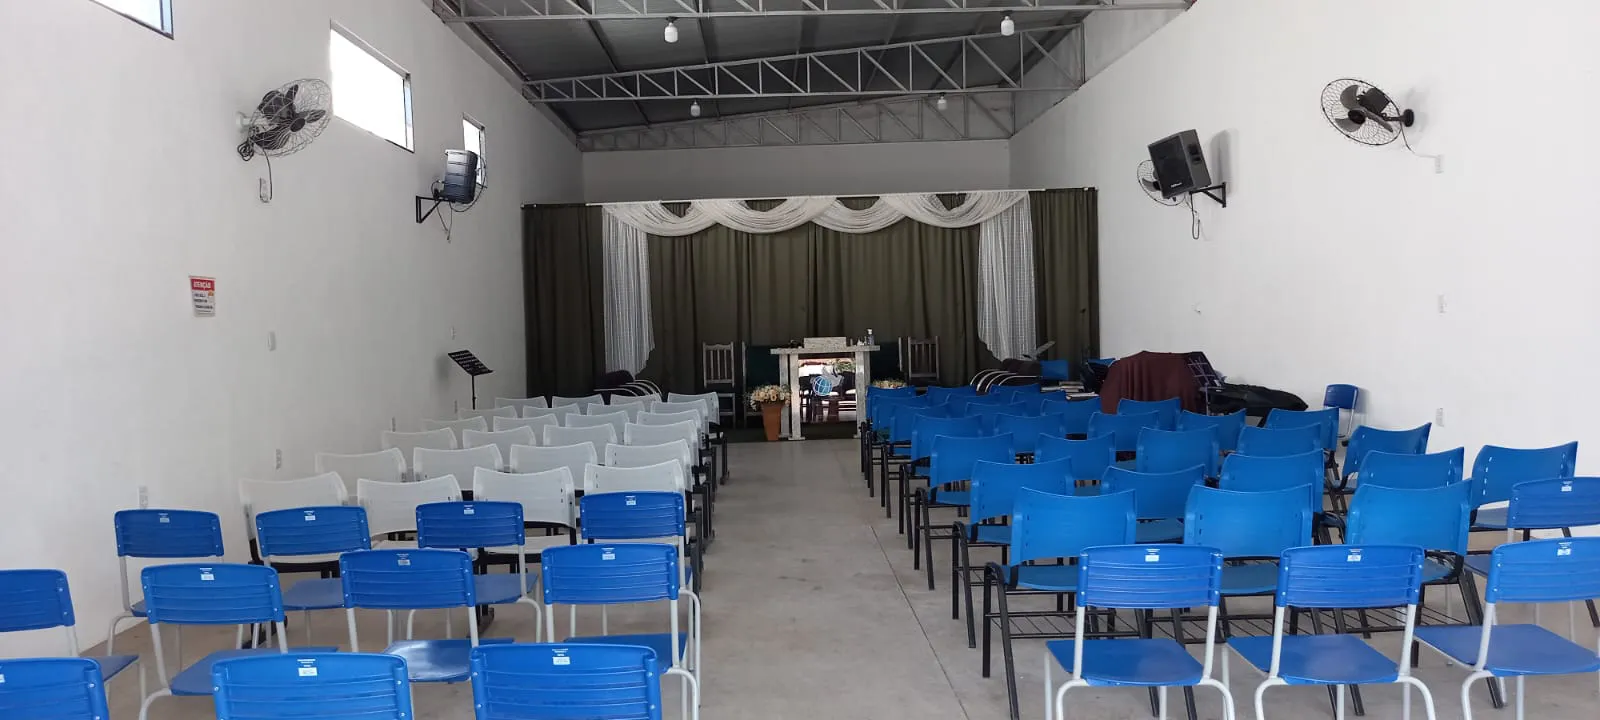 Igreja ADRP Catiguá - SP